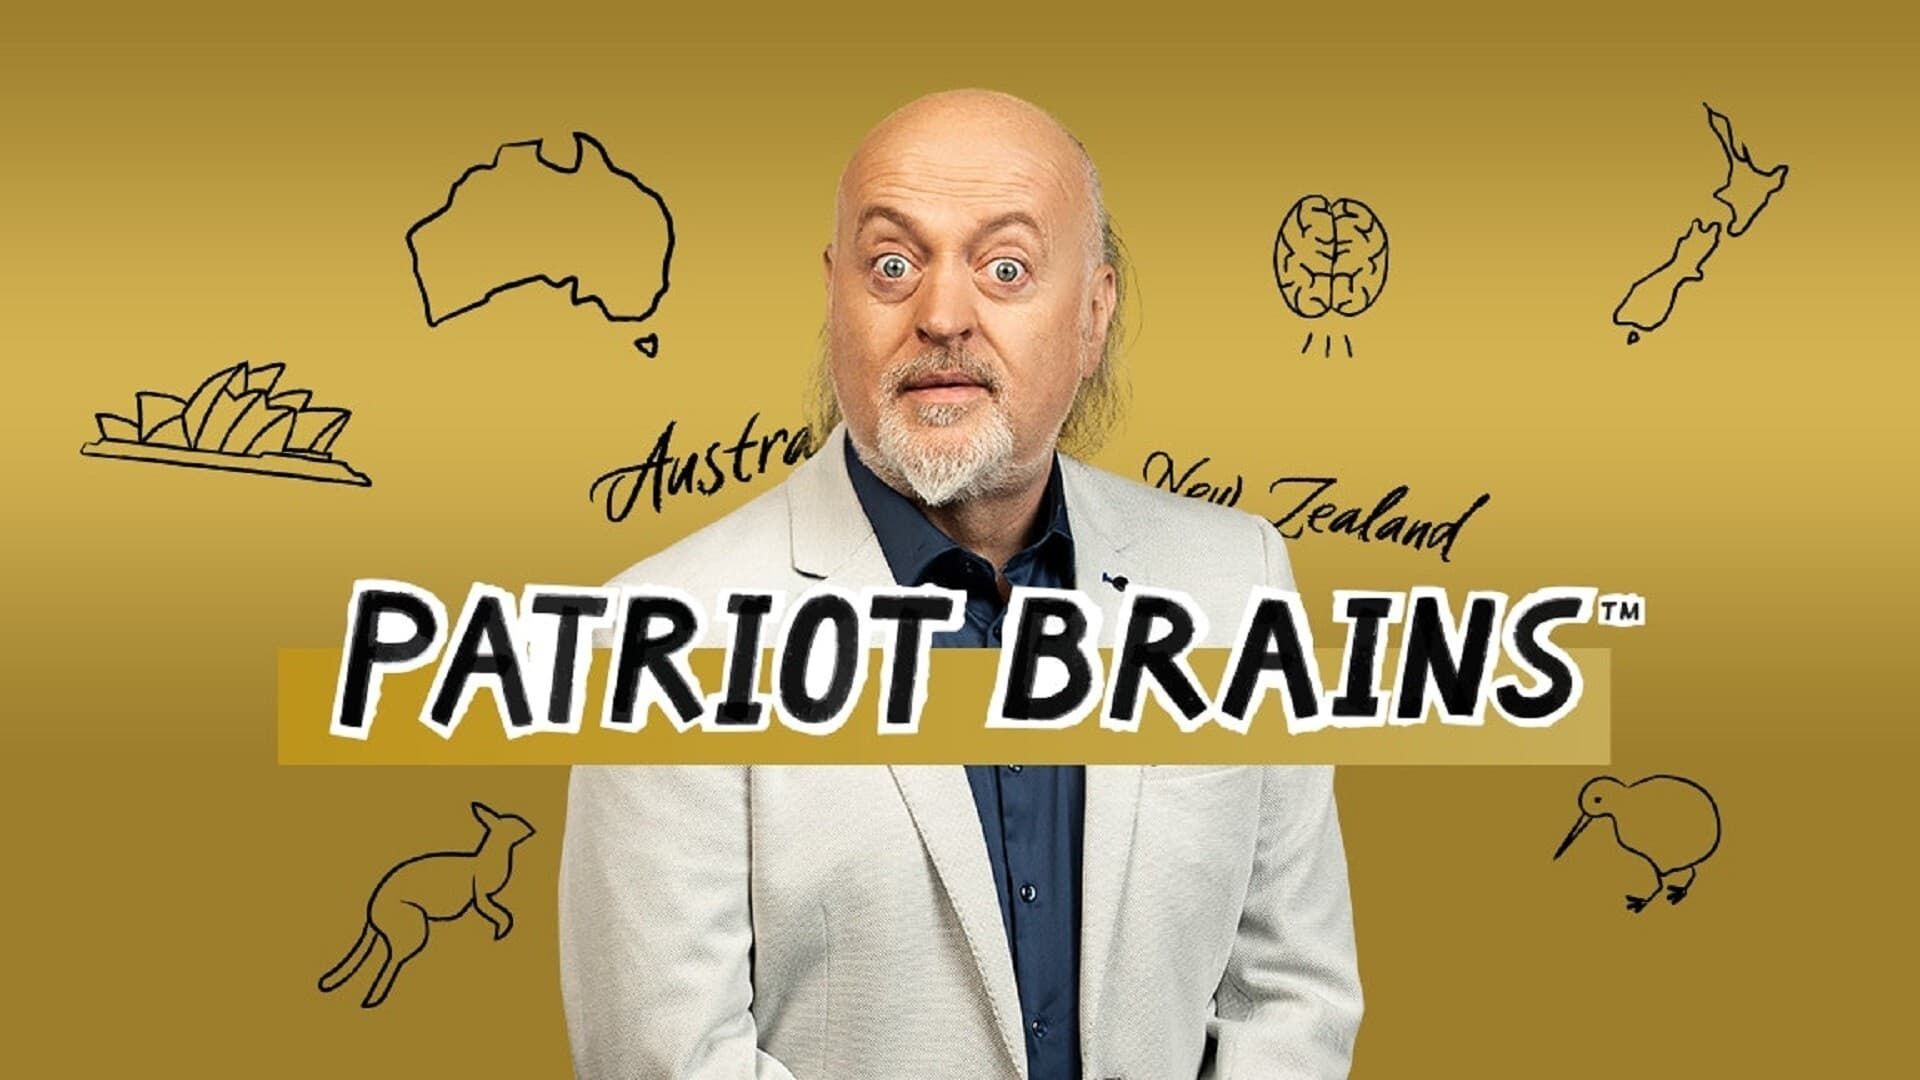 Patriot Brains background